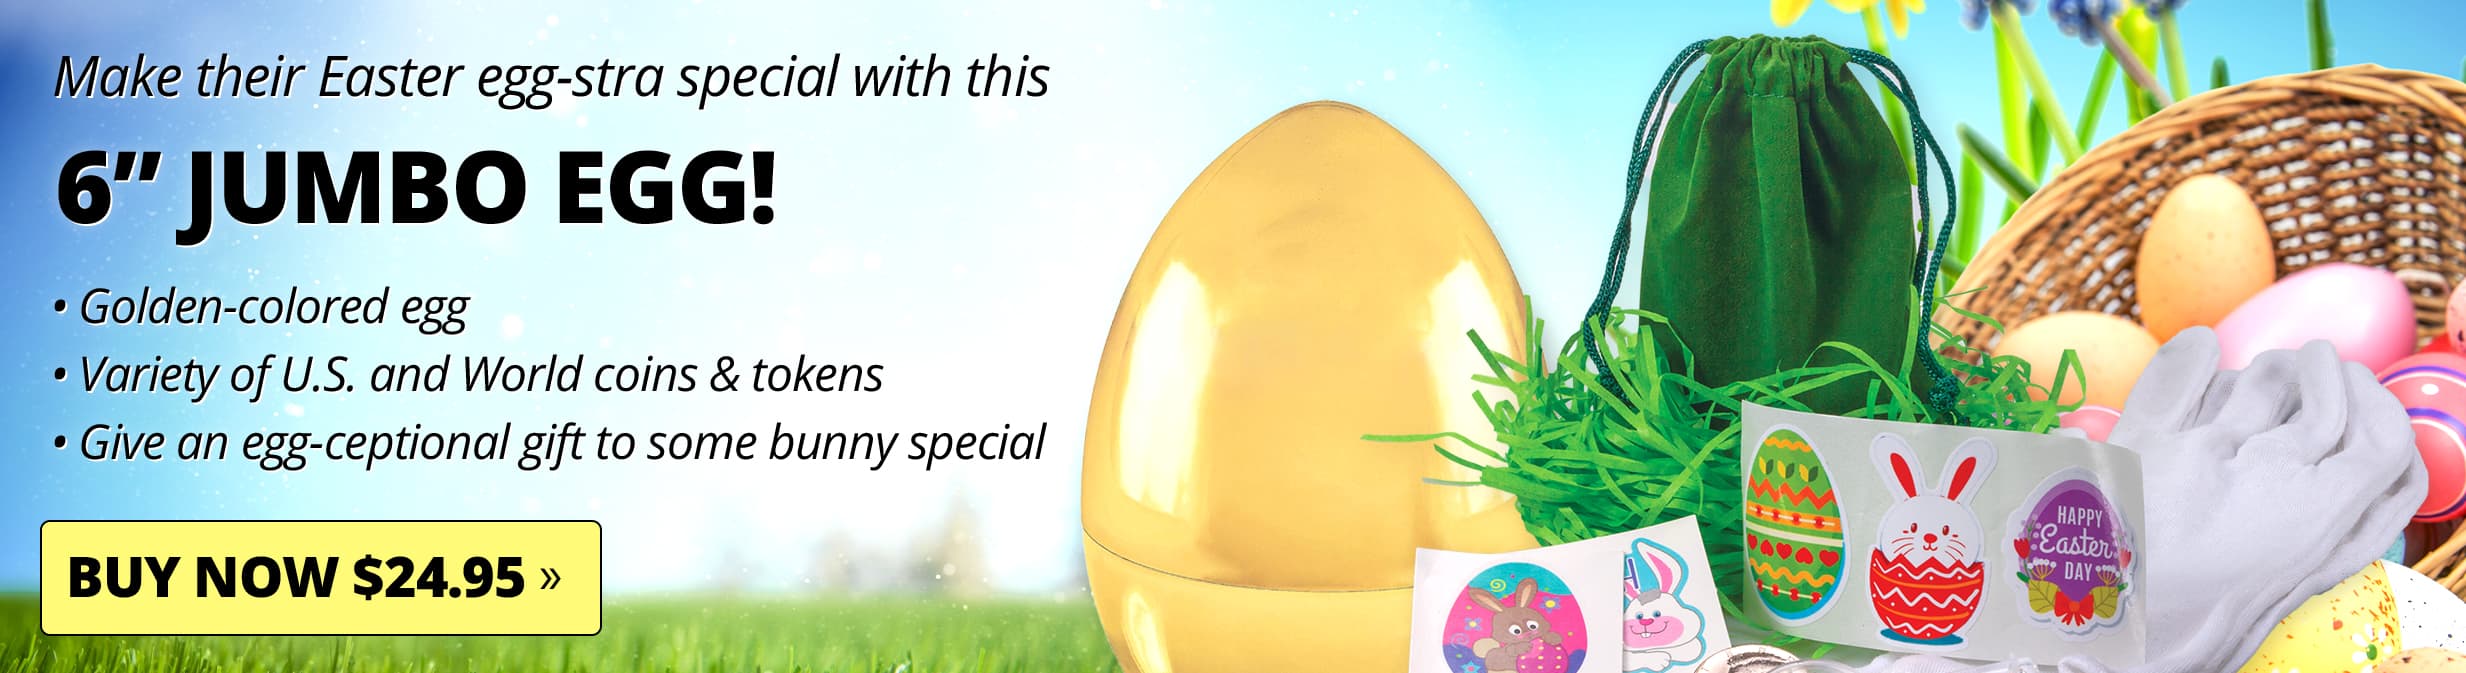 Jumbo Egg